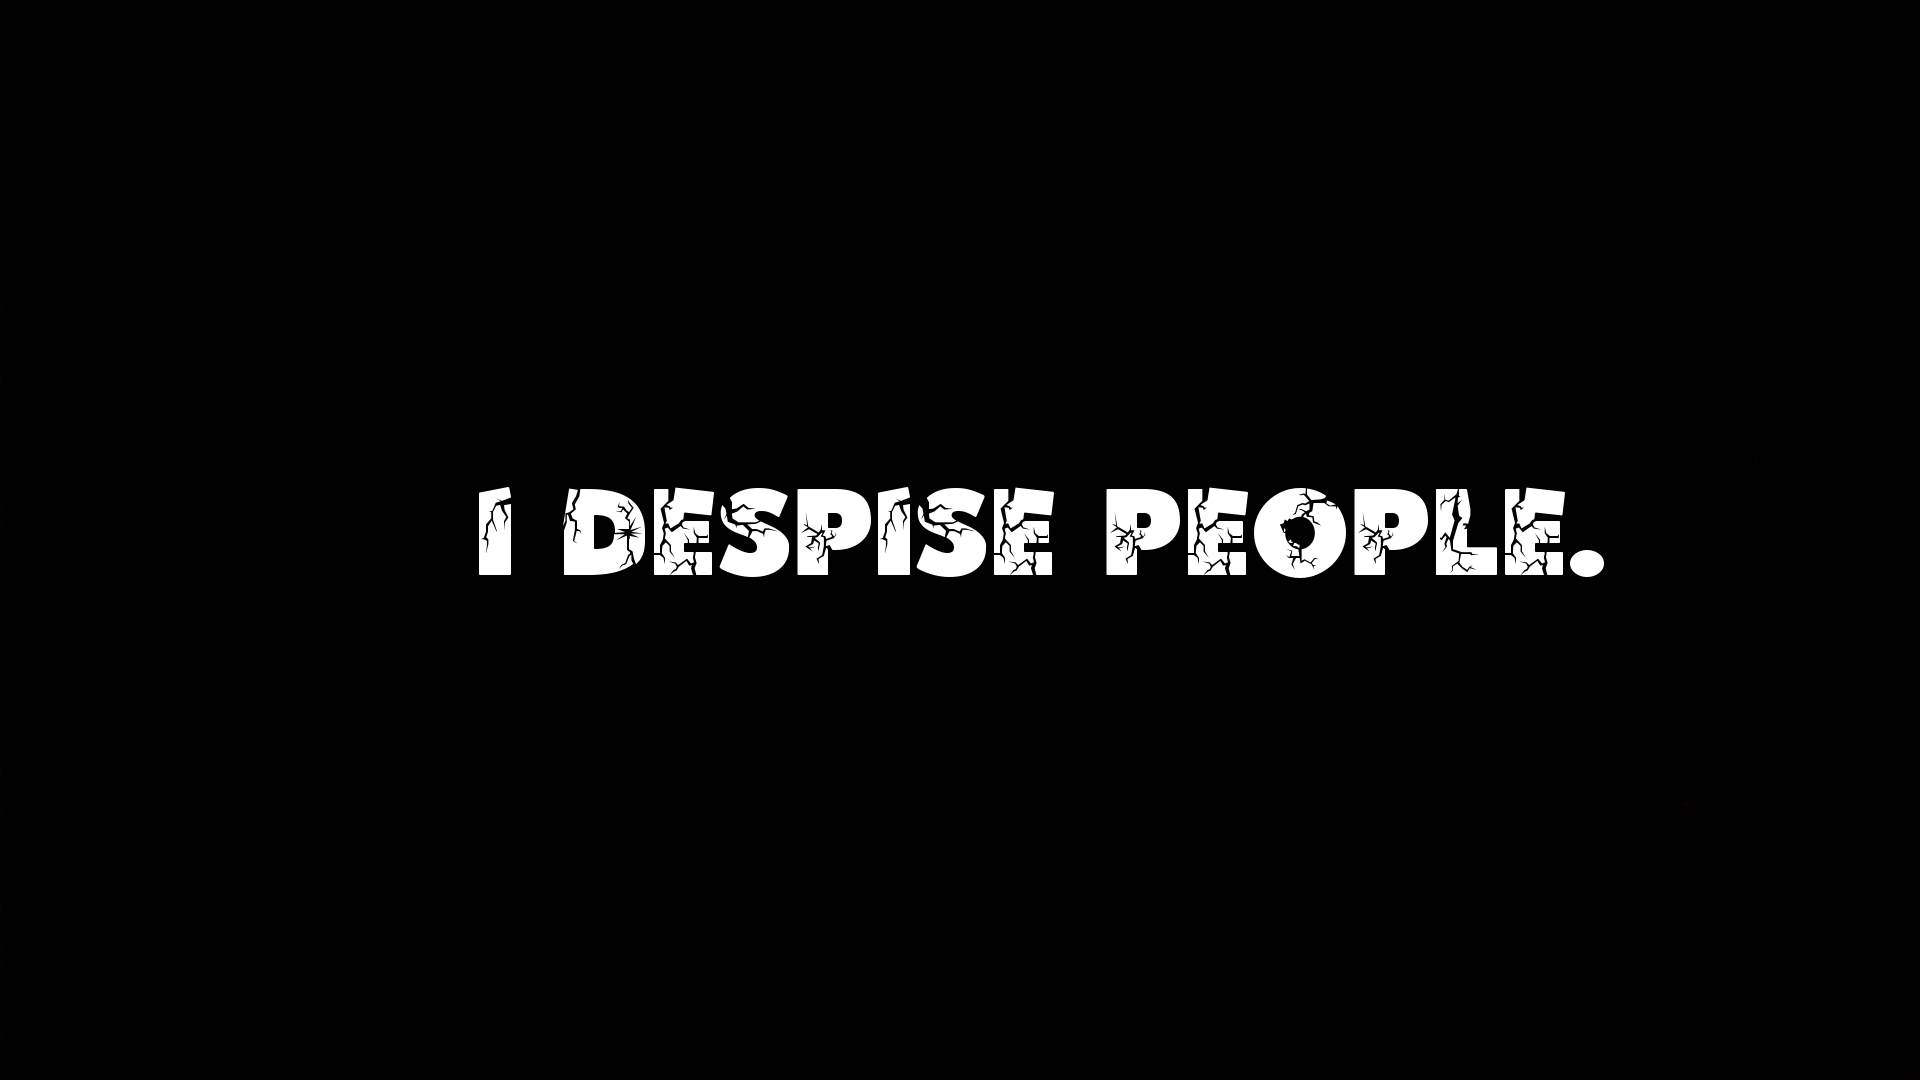 I despise people.